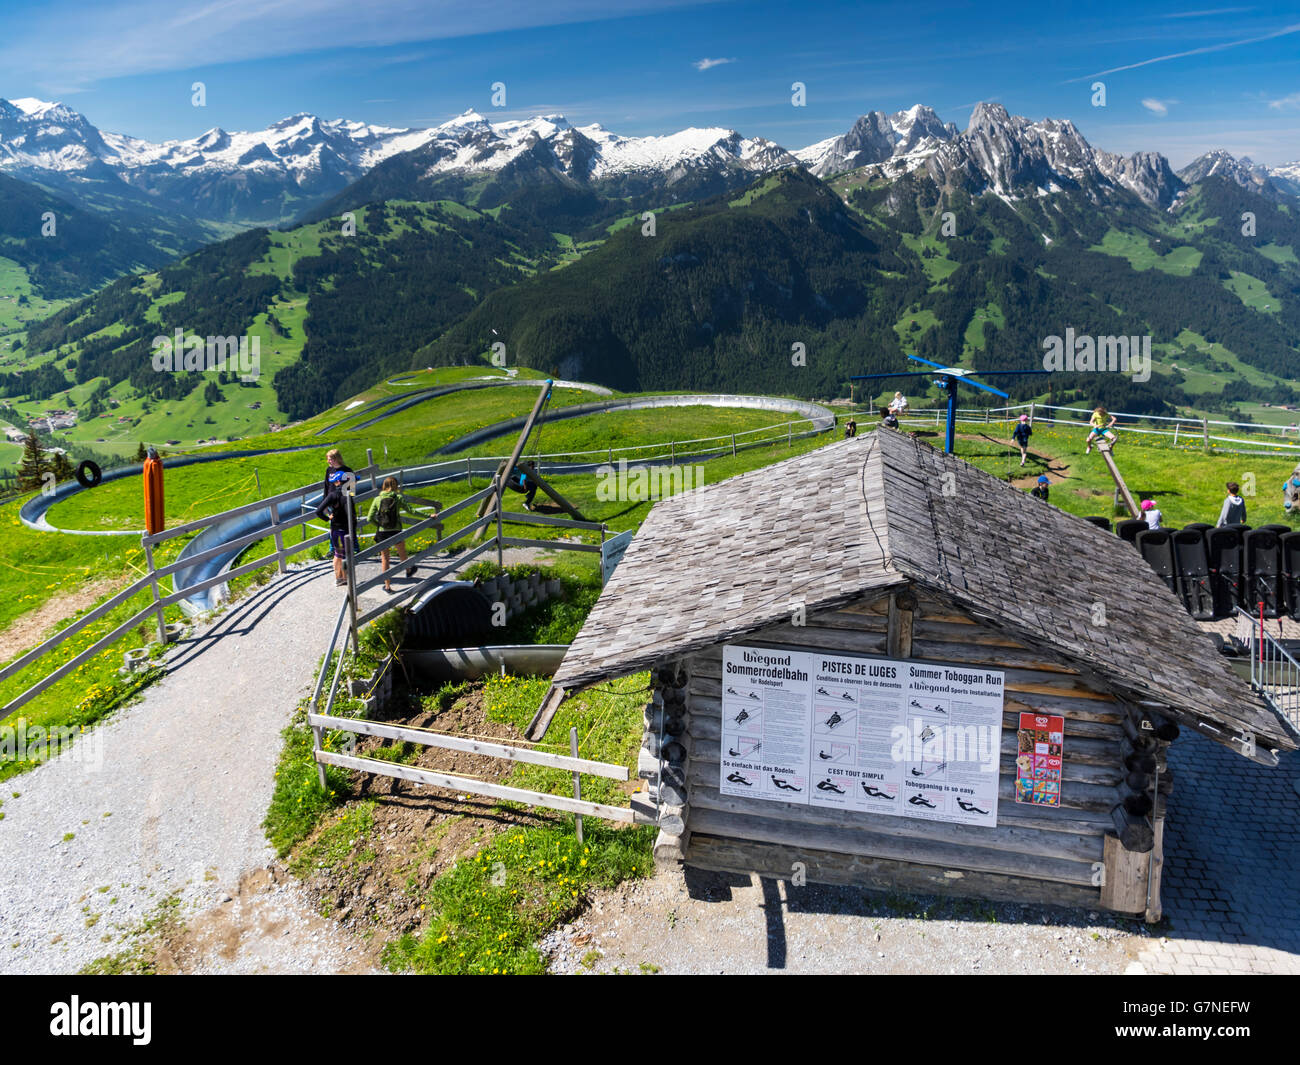 Mountain coaster run on Rellerli mountain, close to Gstaad, Switzerland. Stock Photo